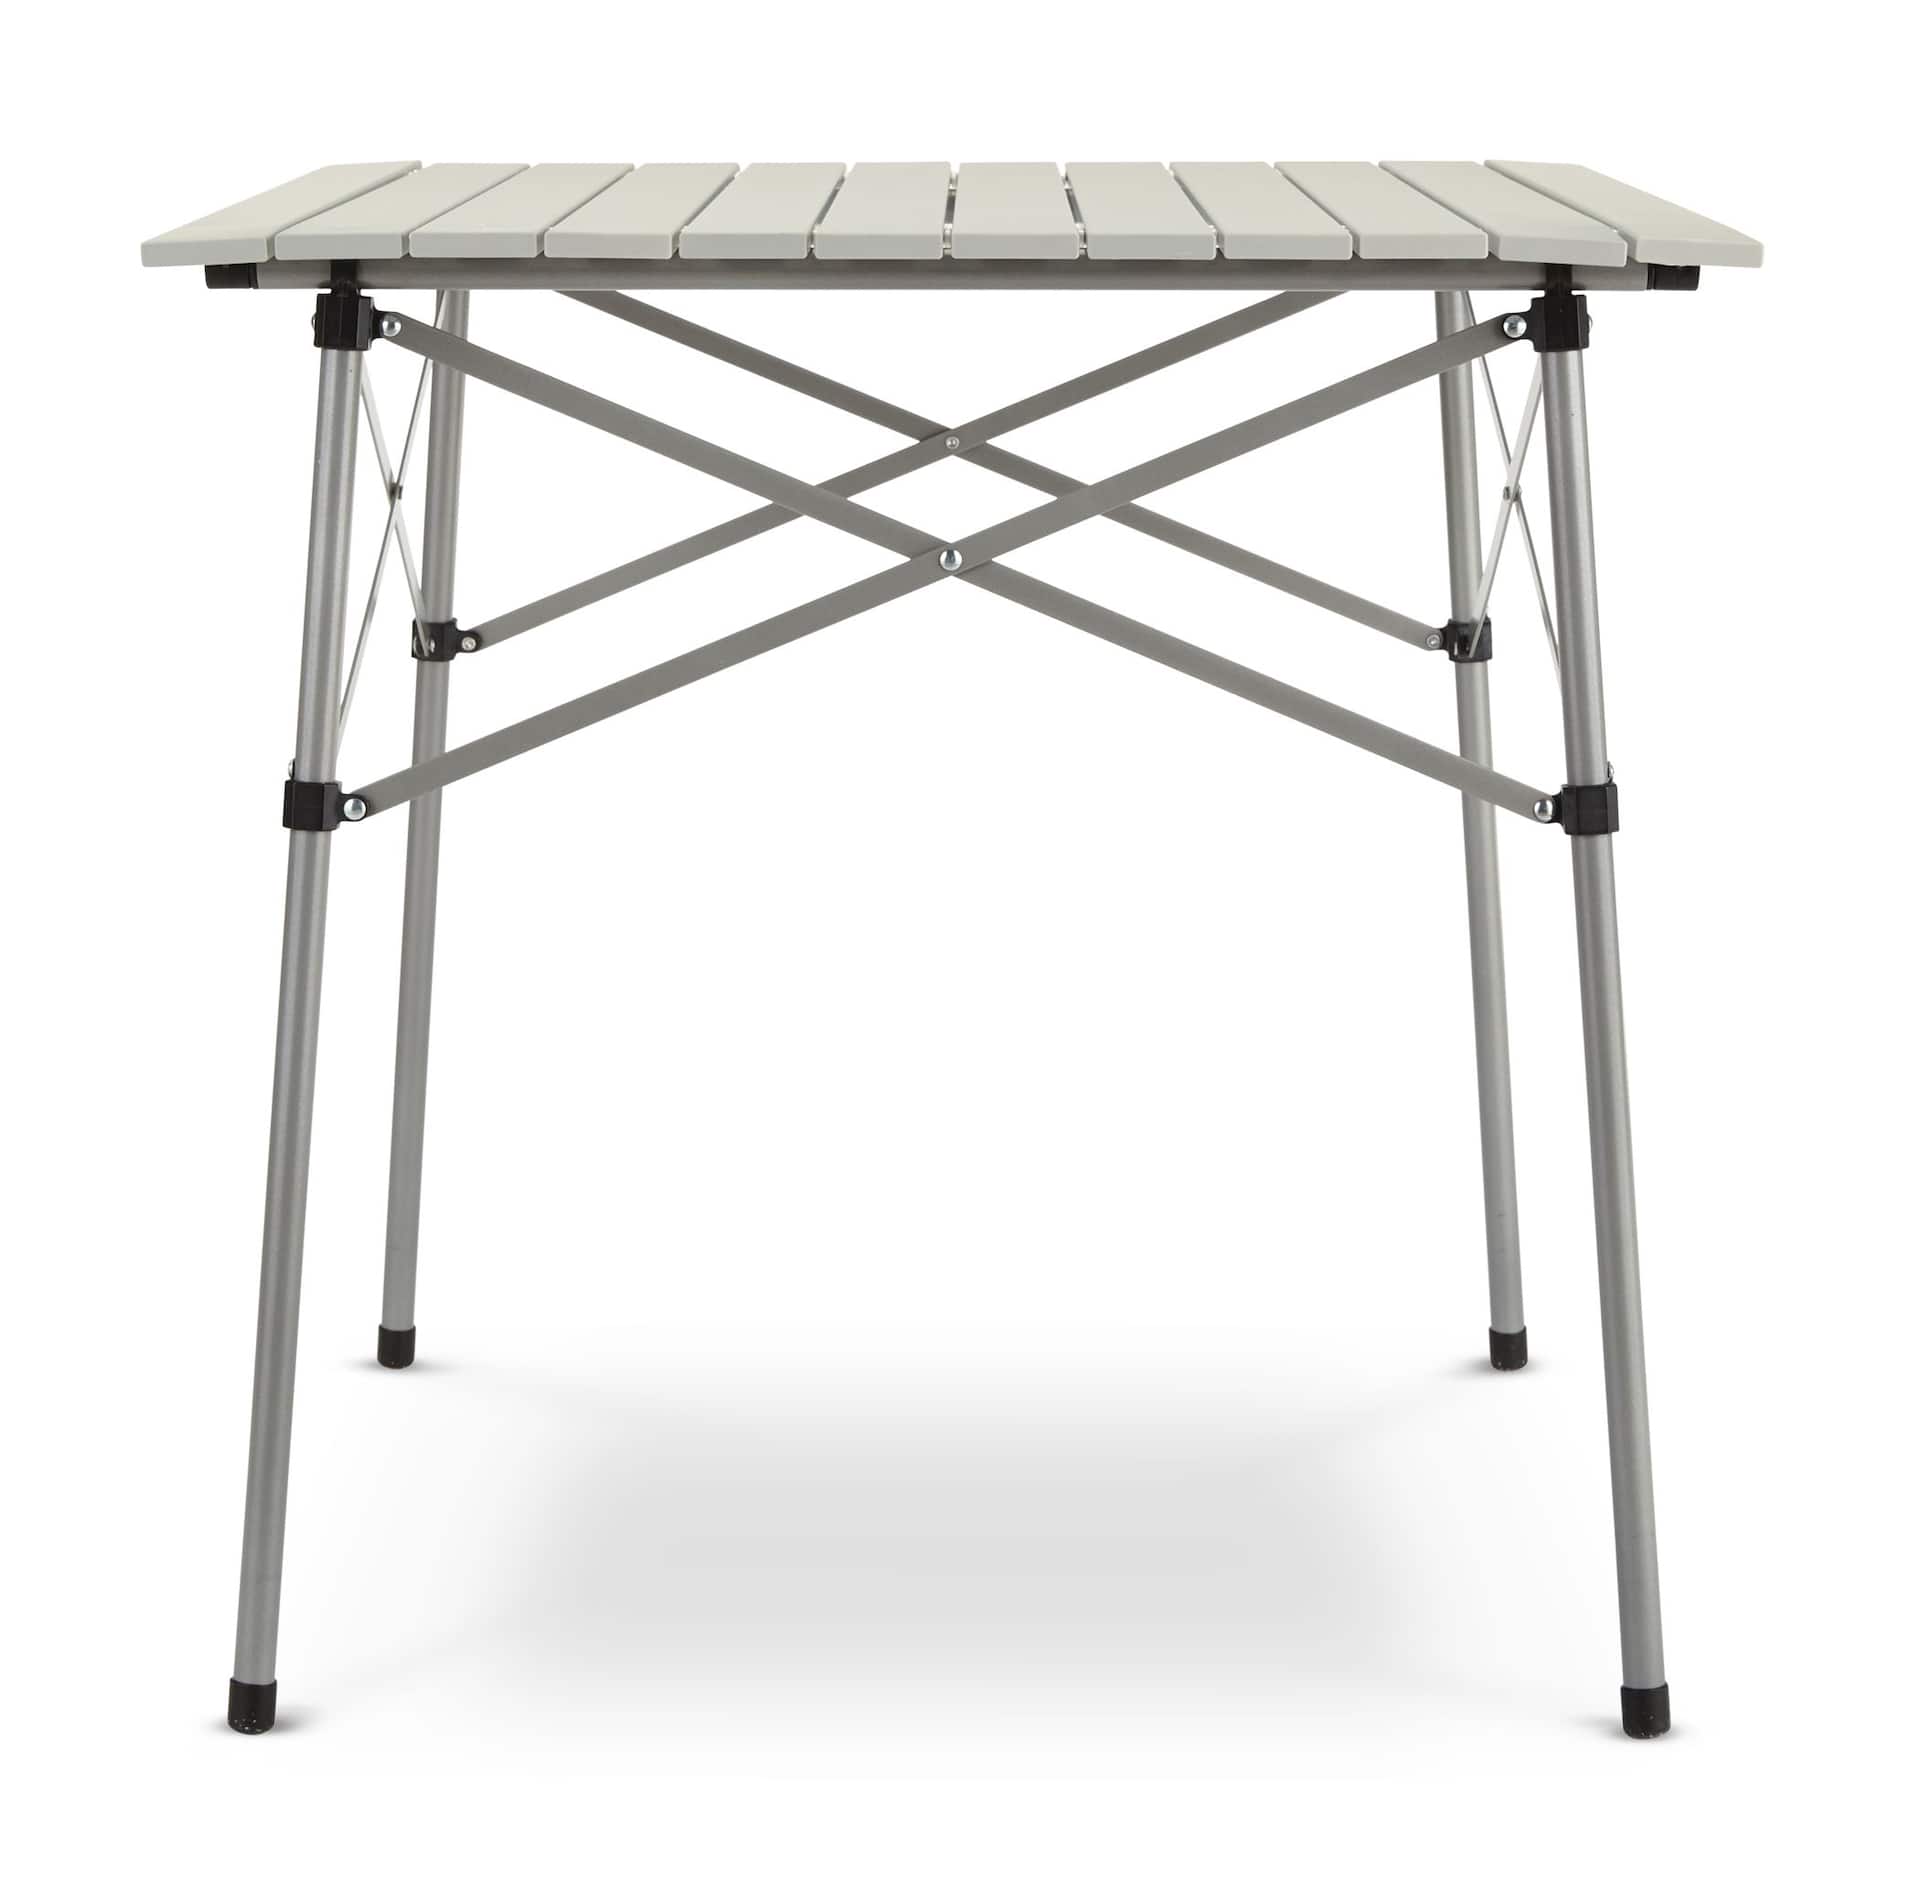 Table de camping d'appoint pliable en aluminium